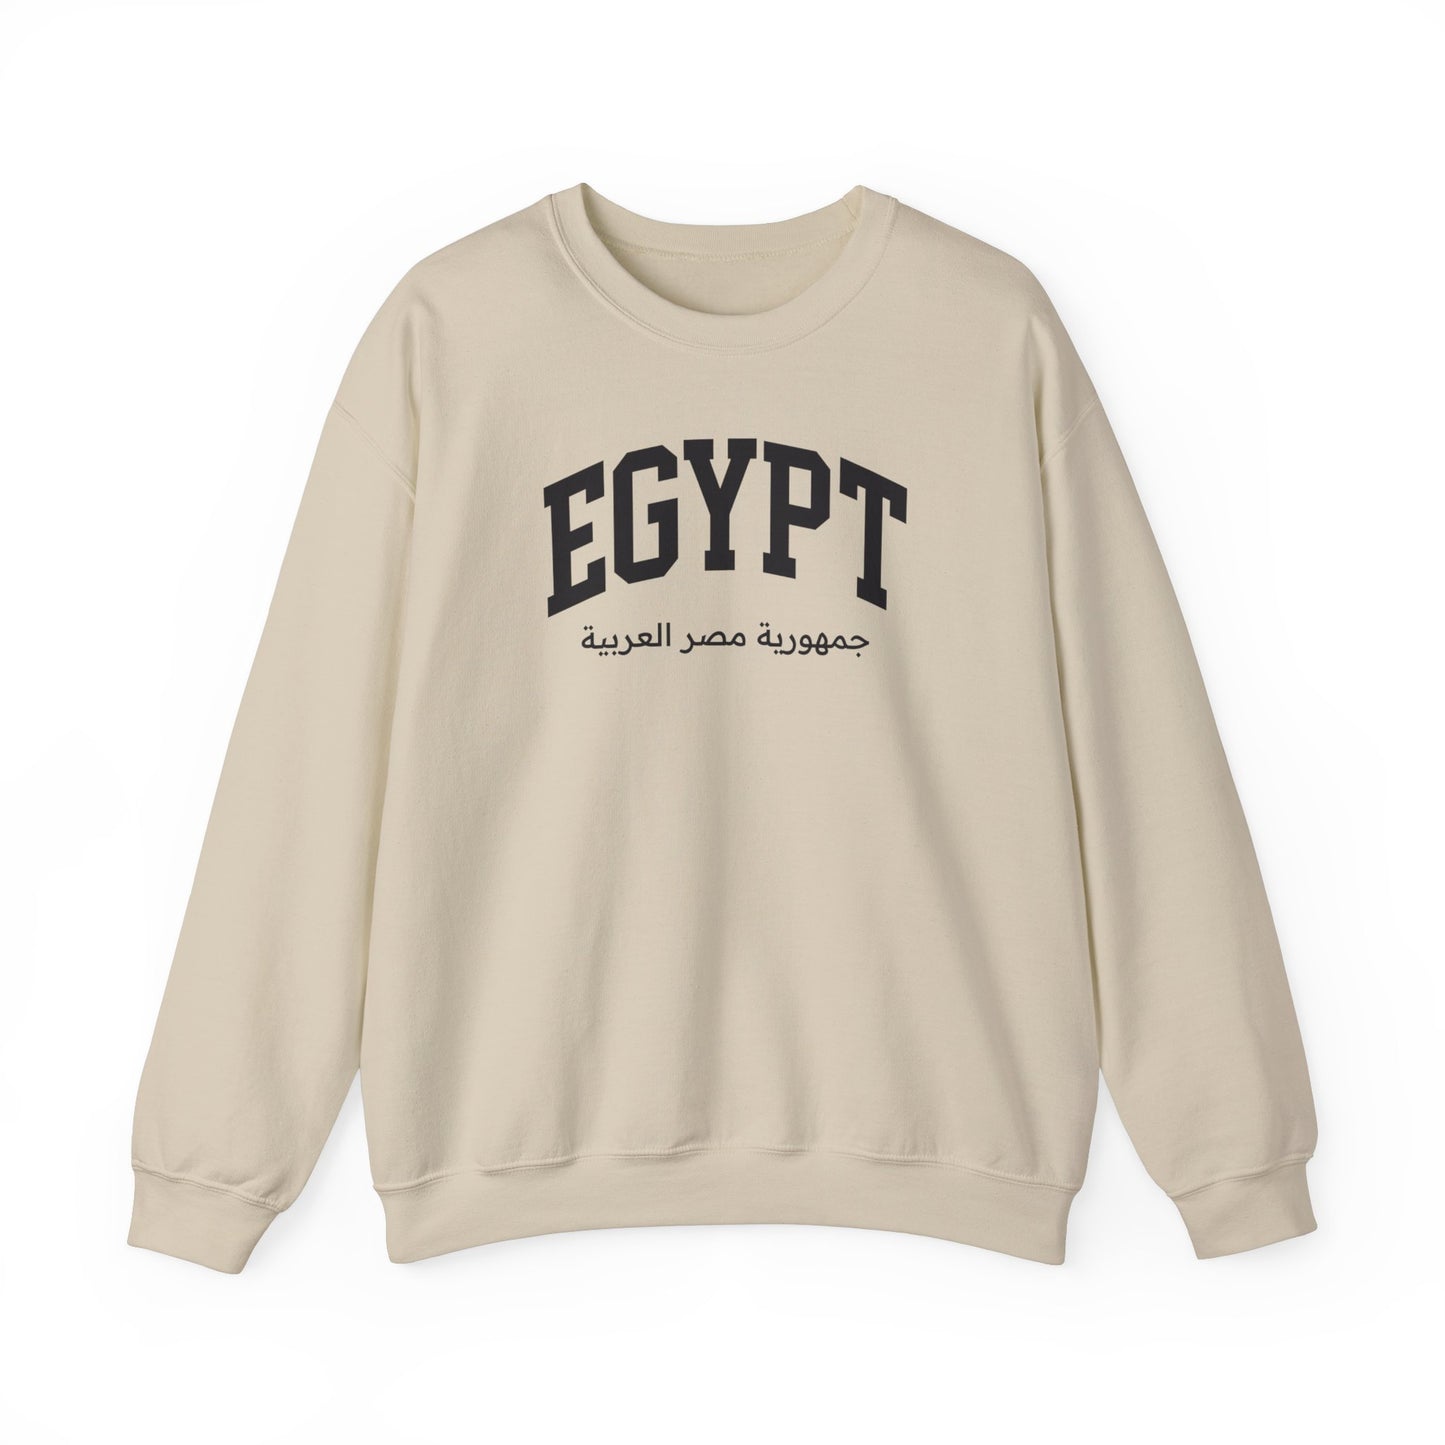 Egypt Sweatshirt